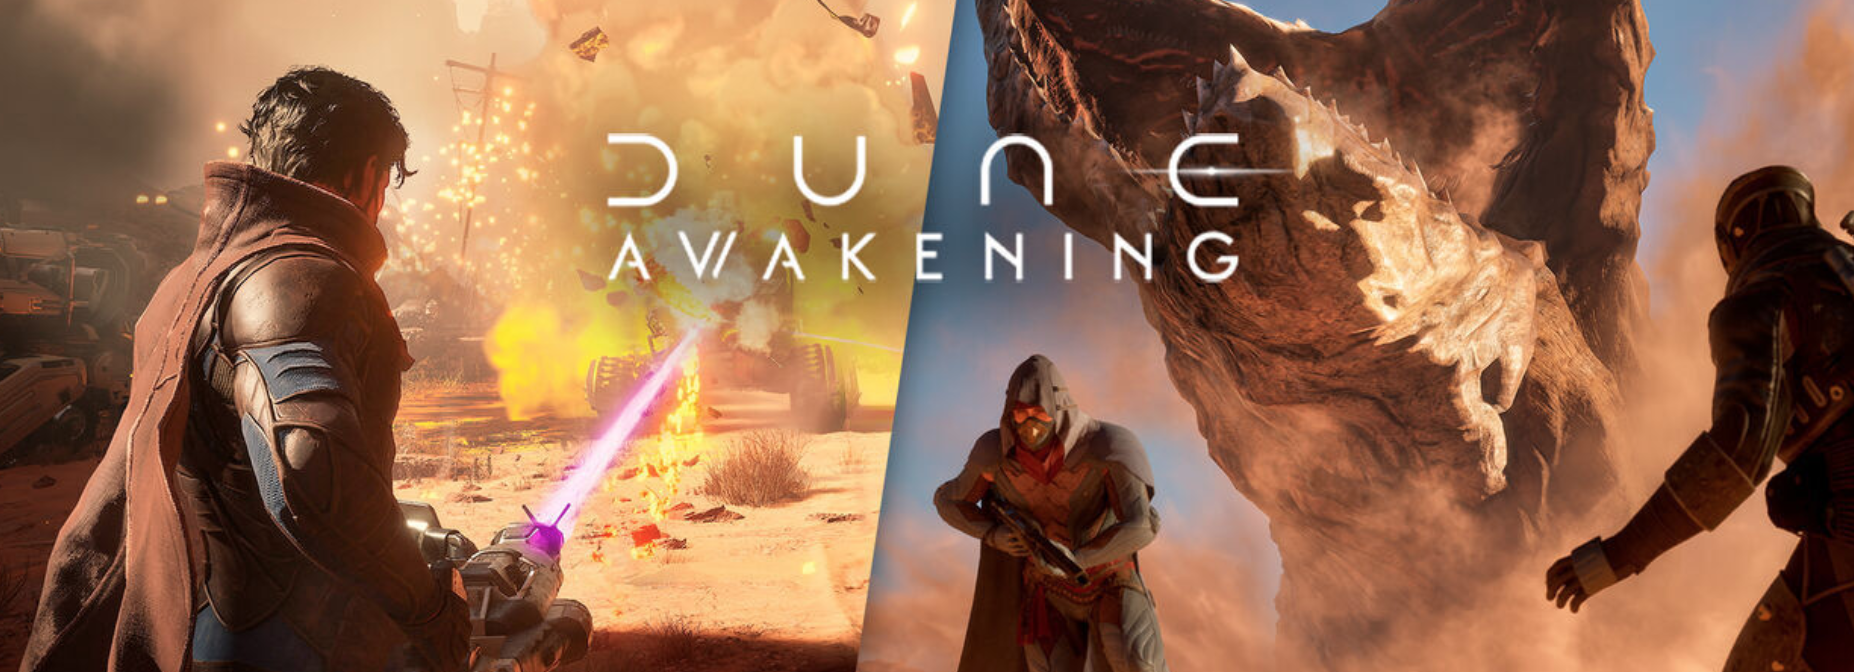 Dune: Awakening enseña su primer video gameplay y sorprende a los fans